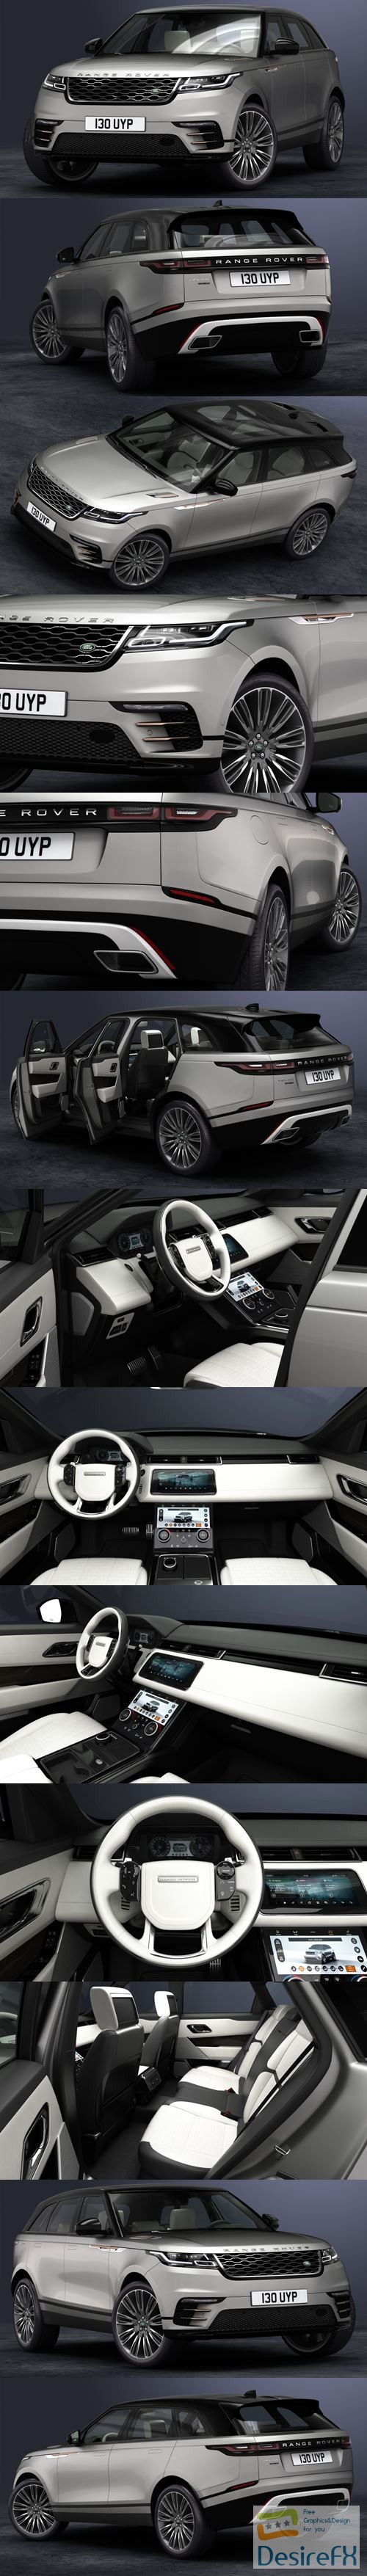 Land Rover - Range Rover Velar 2018 3D Model